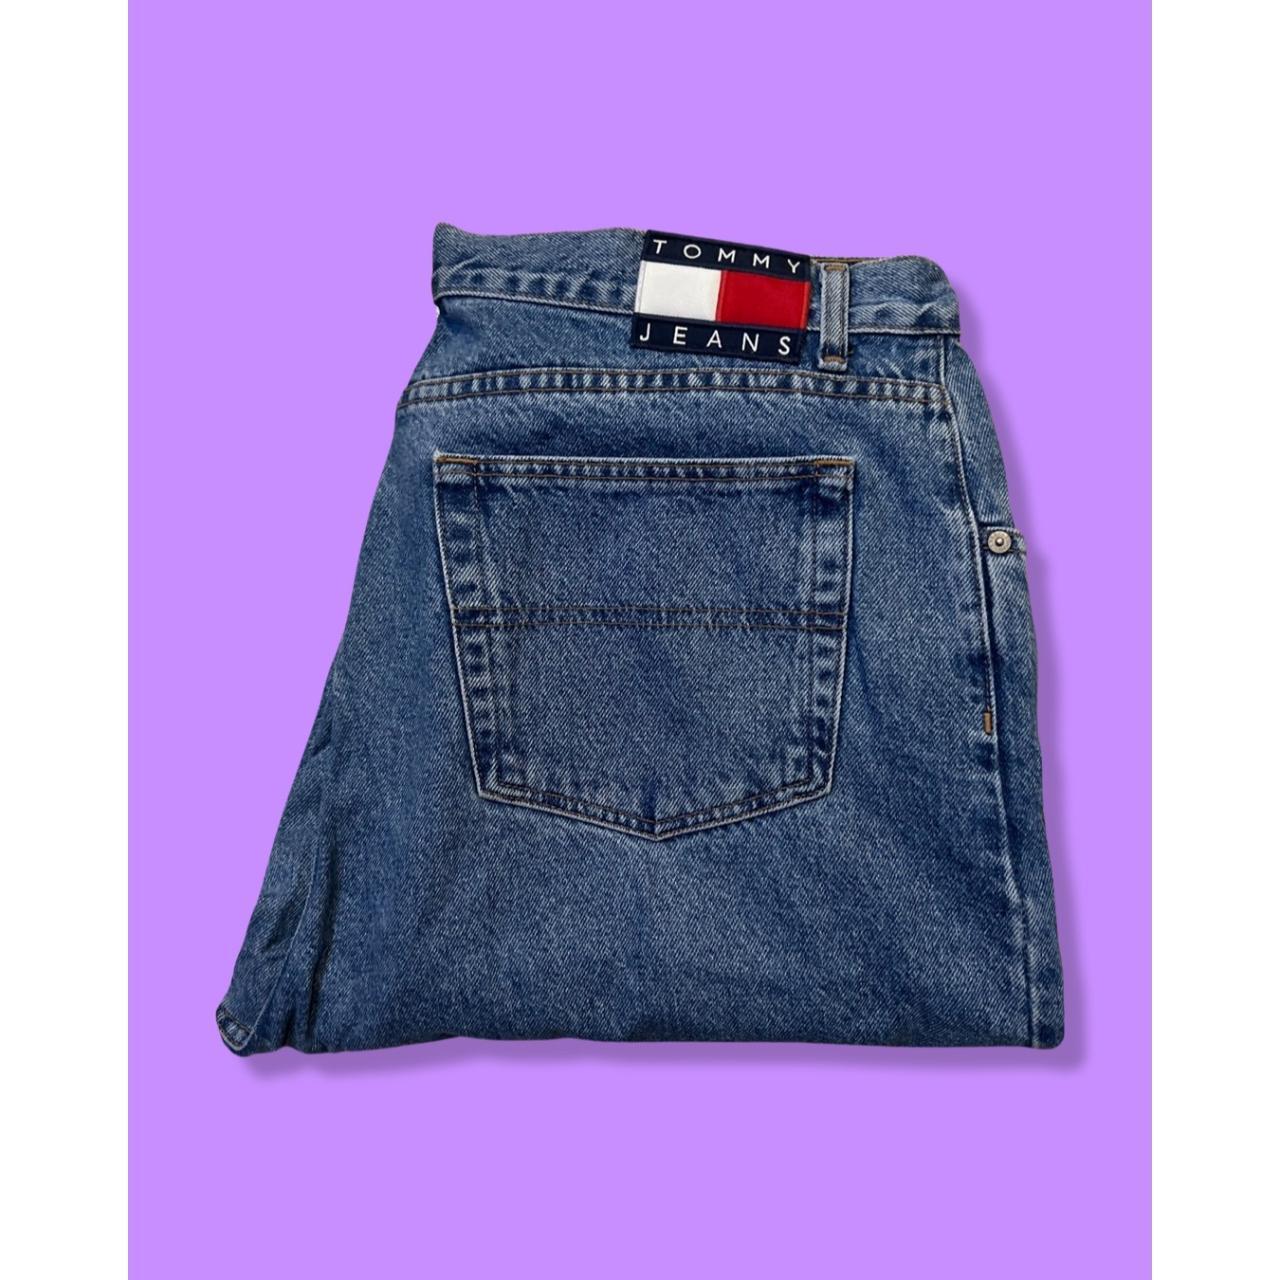 Vintage Tommy Hilfiger Jeans 90's Essential Light... - Depop